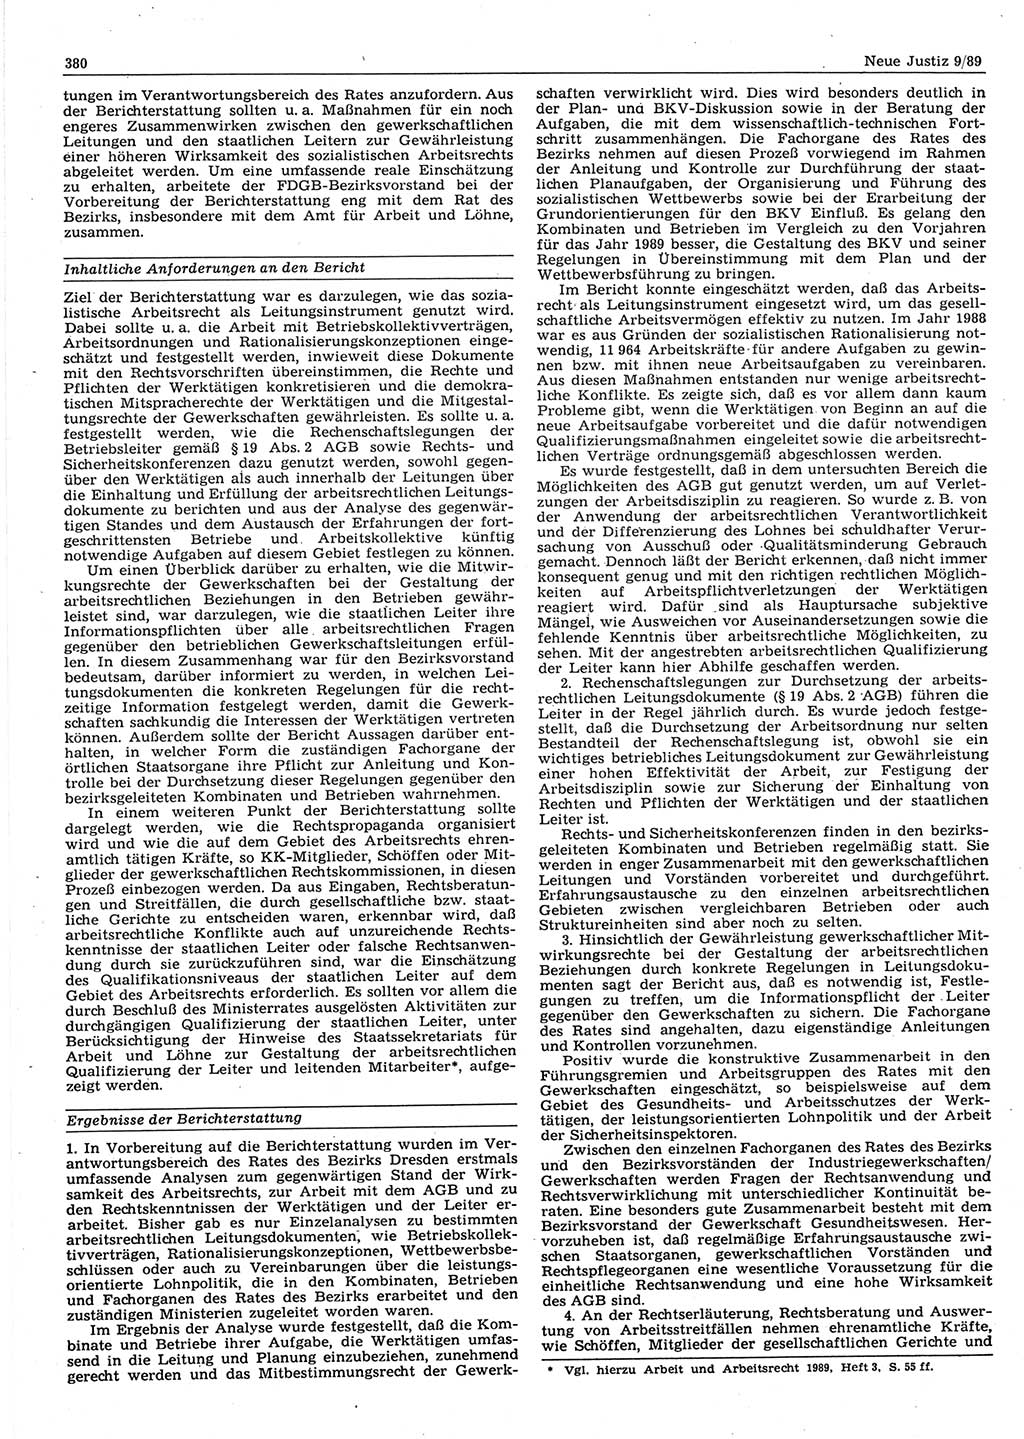 Neue Justiz (NJ), Zeitschrift für sozialistisches Recht und Gesetzlichkeit [Deutsche Demokratische Republik (DDR)], 43. Jahrgang 1989, Seite 380 (NJ DDR 1989, S. 380)